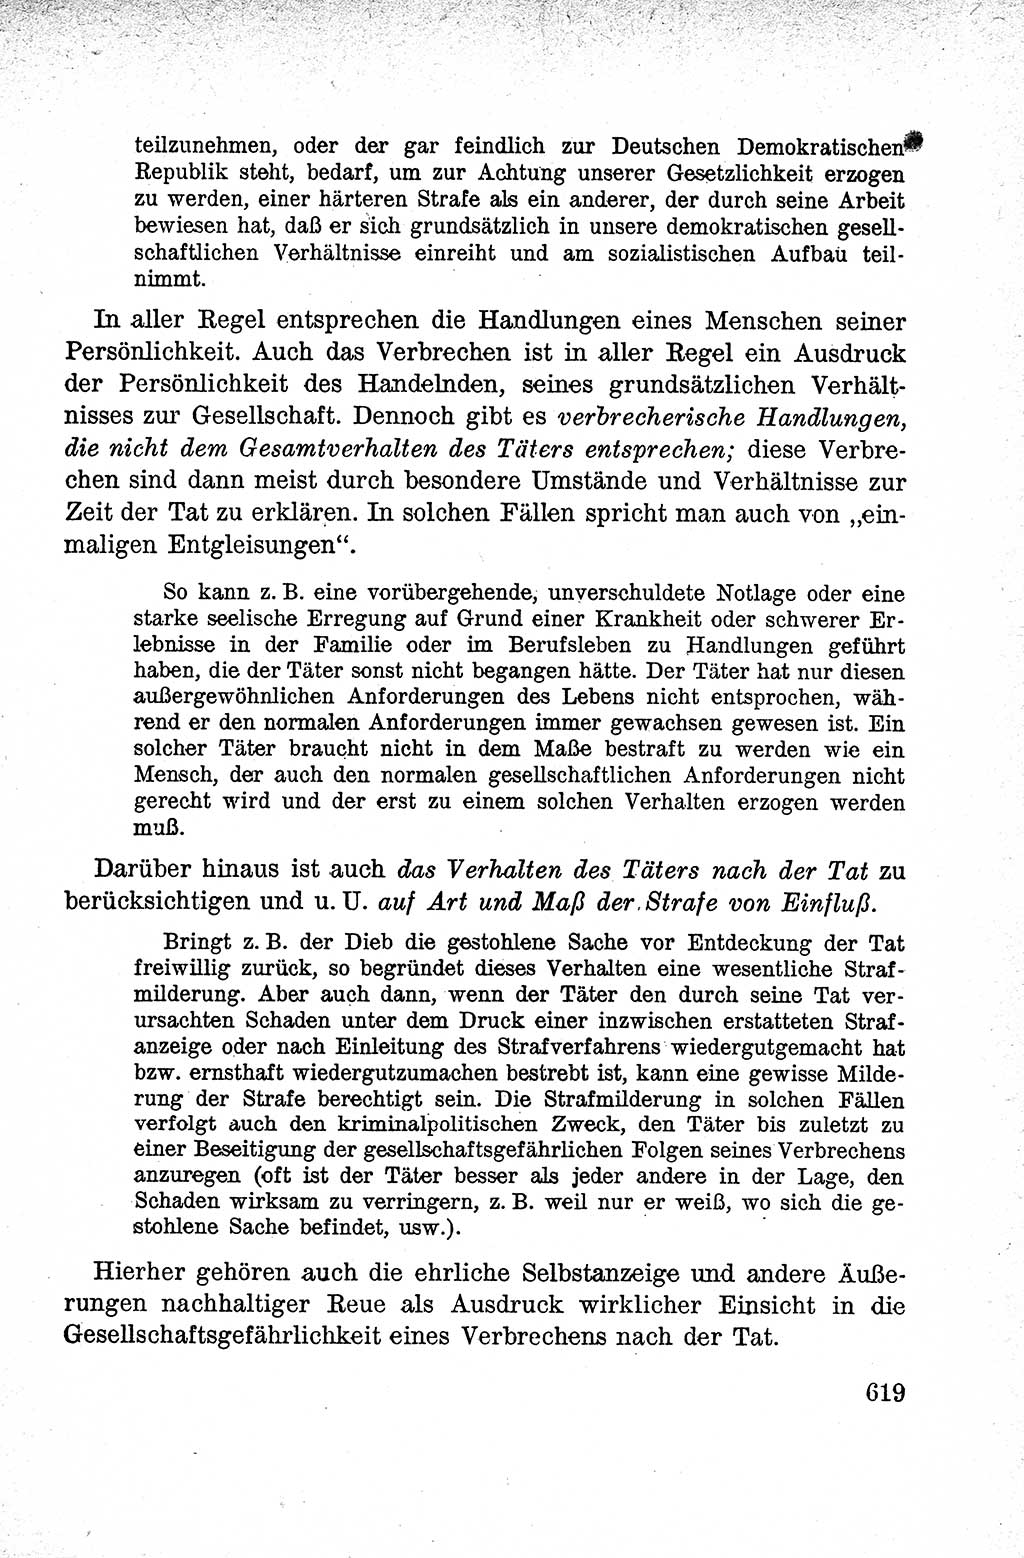 Lehrbuch des Strafrechts der Deutschen Demokratischen Republik (DDR), Allgemeiner Teil 1959, Seite 619 (Lb. Strafr. DDR AT 1959, S. 619)